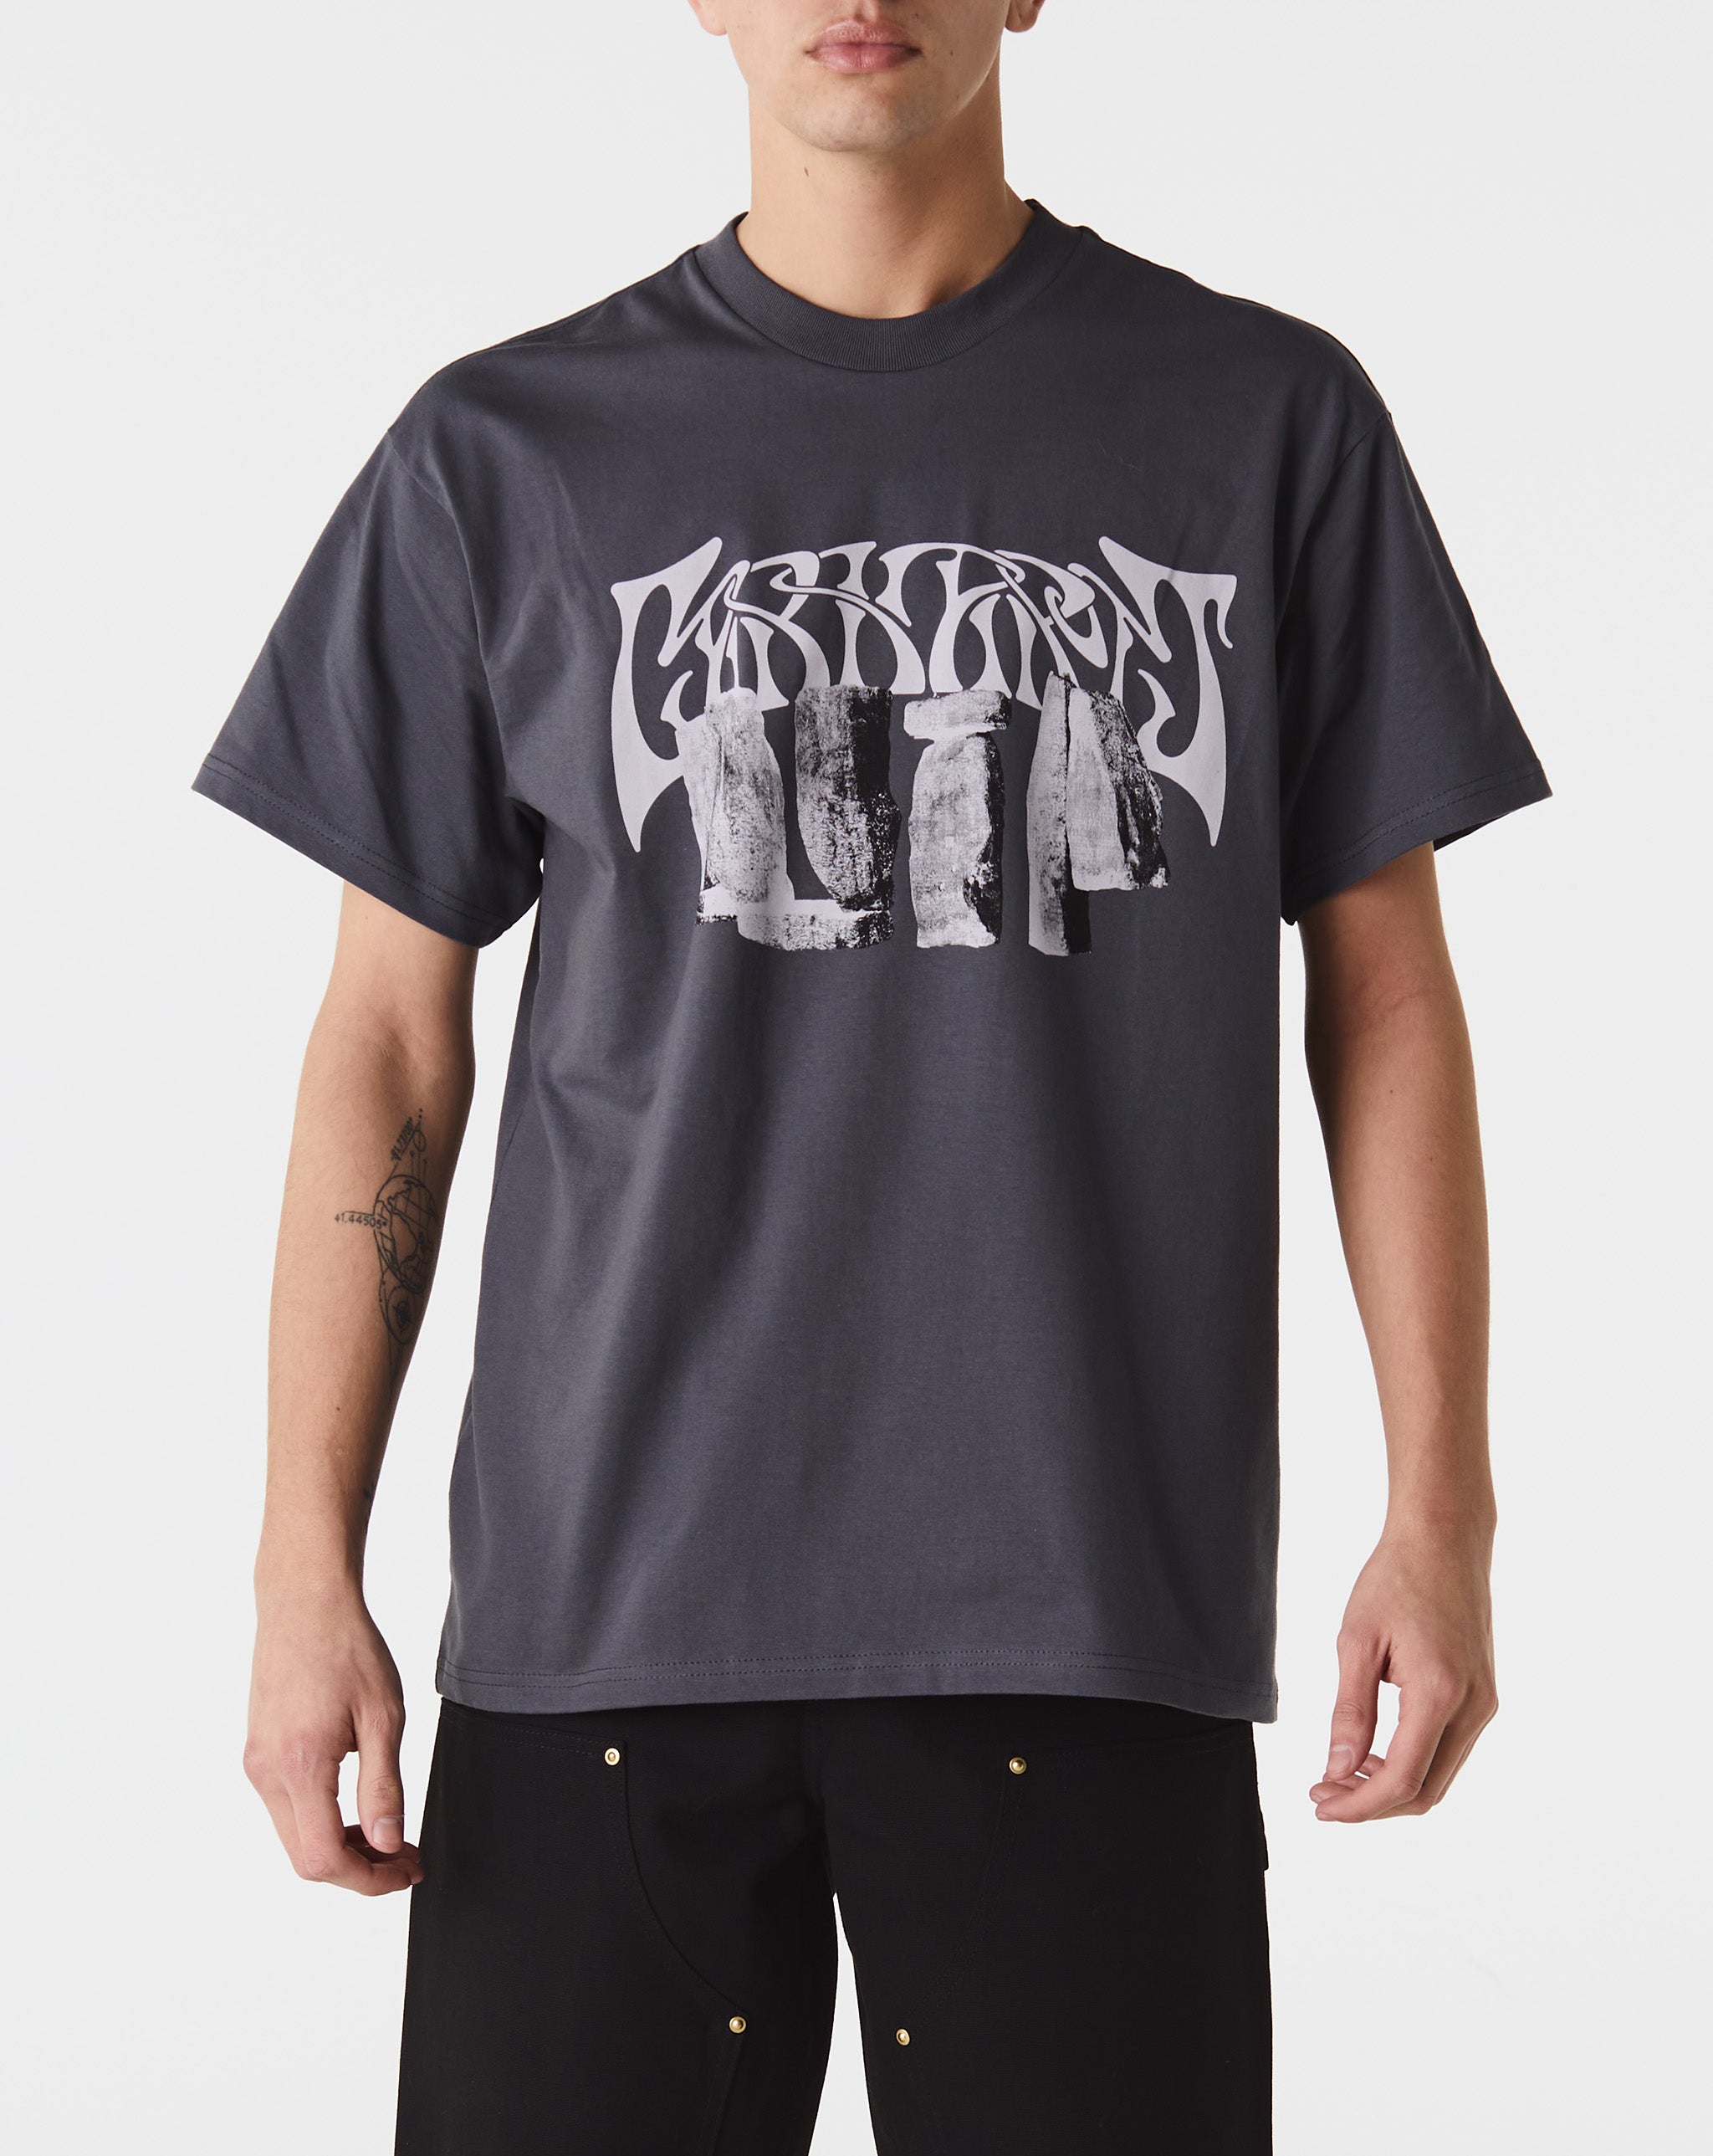 Carhartt WIP Pagan T-Shirt  - Cheap Urlfreeze Jordan outlet